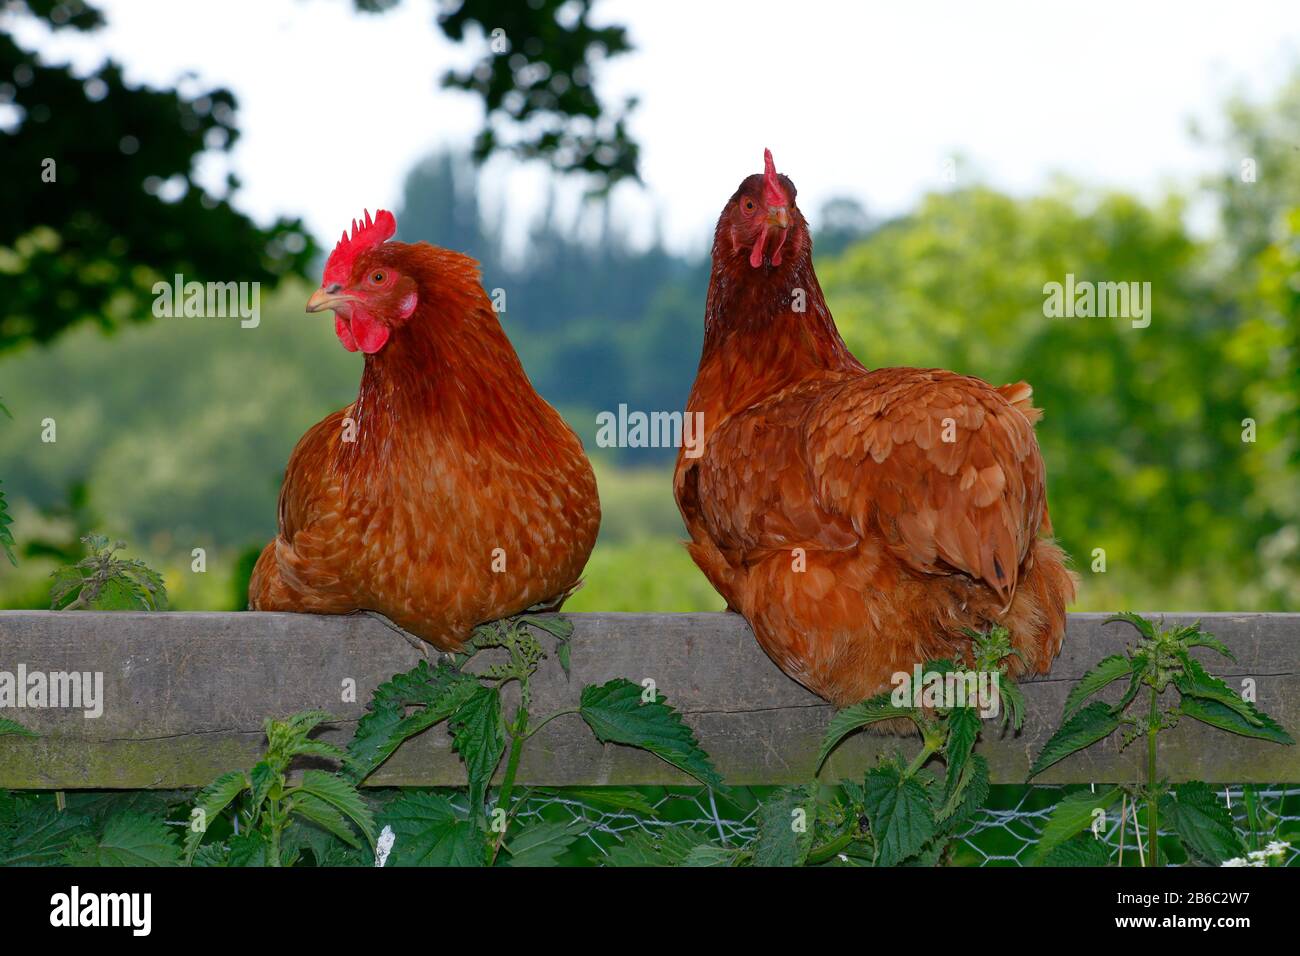 Pollos de la gama libre se sentaron en una valla Foto de stock